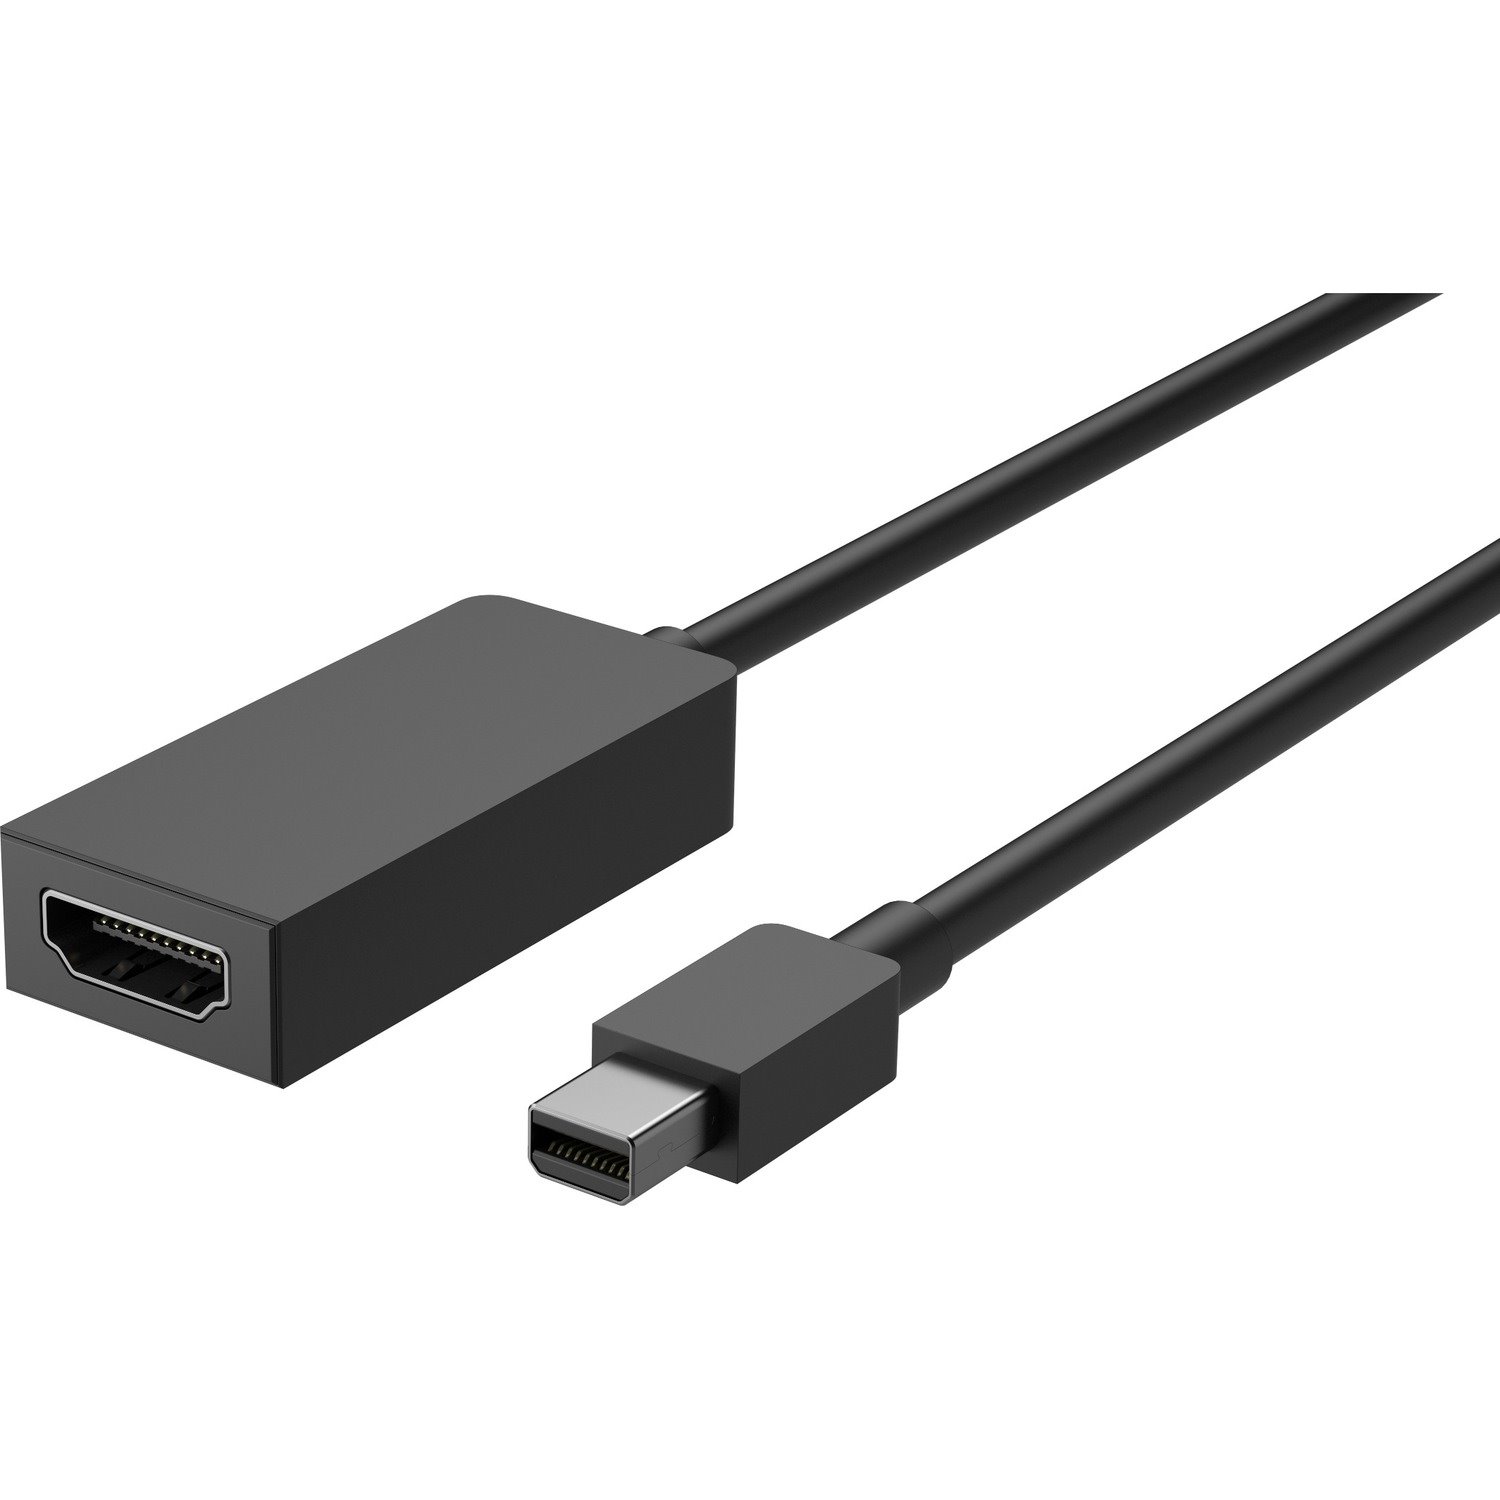 Microsoft HDMI/Mini DisplayPort A/V Cable for Audio/Video Device, HDTV